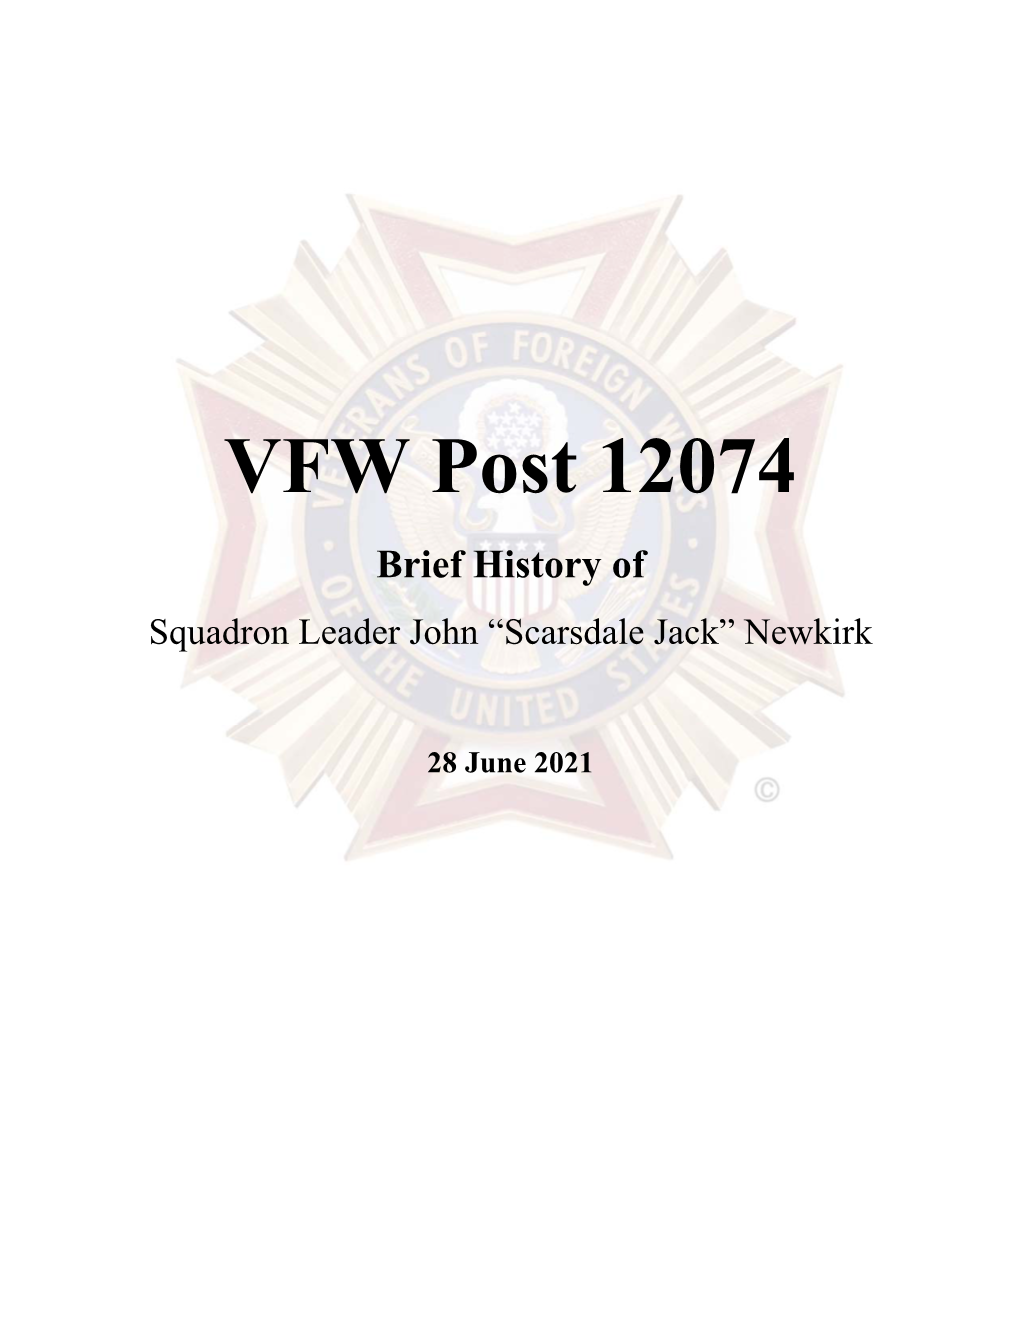 Scarsdale Jack” Newkirk